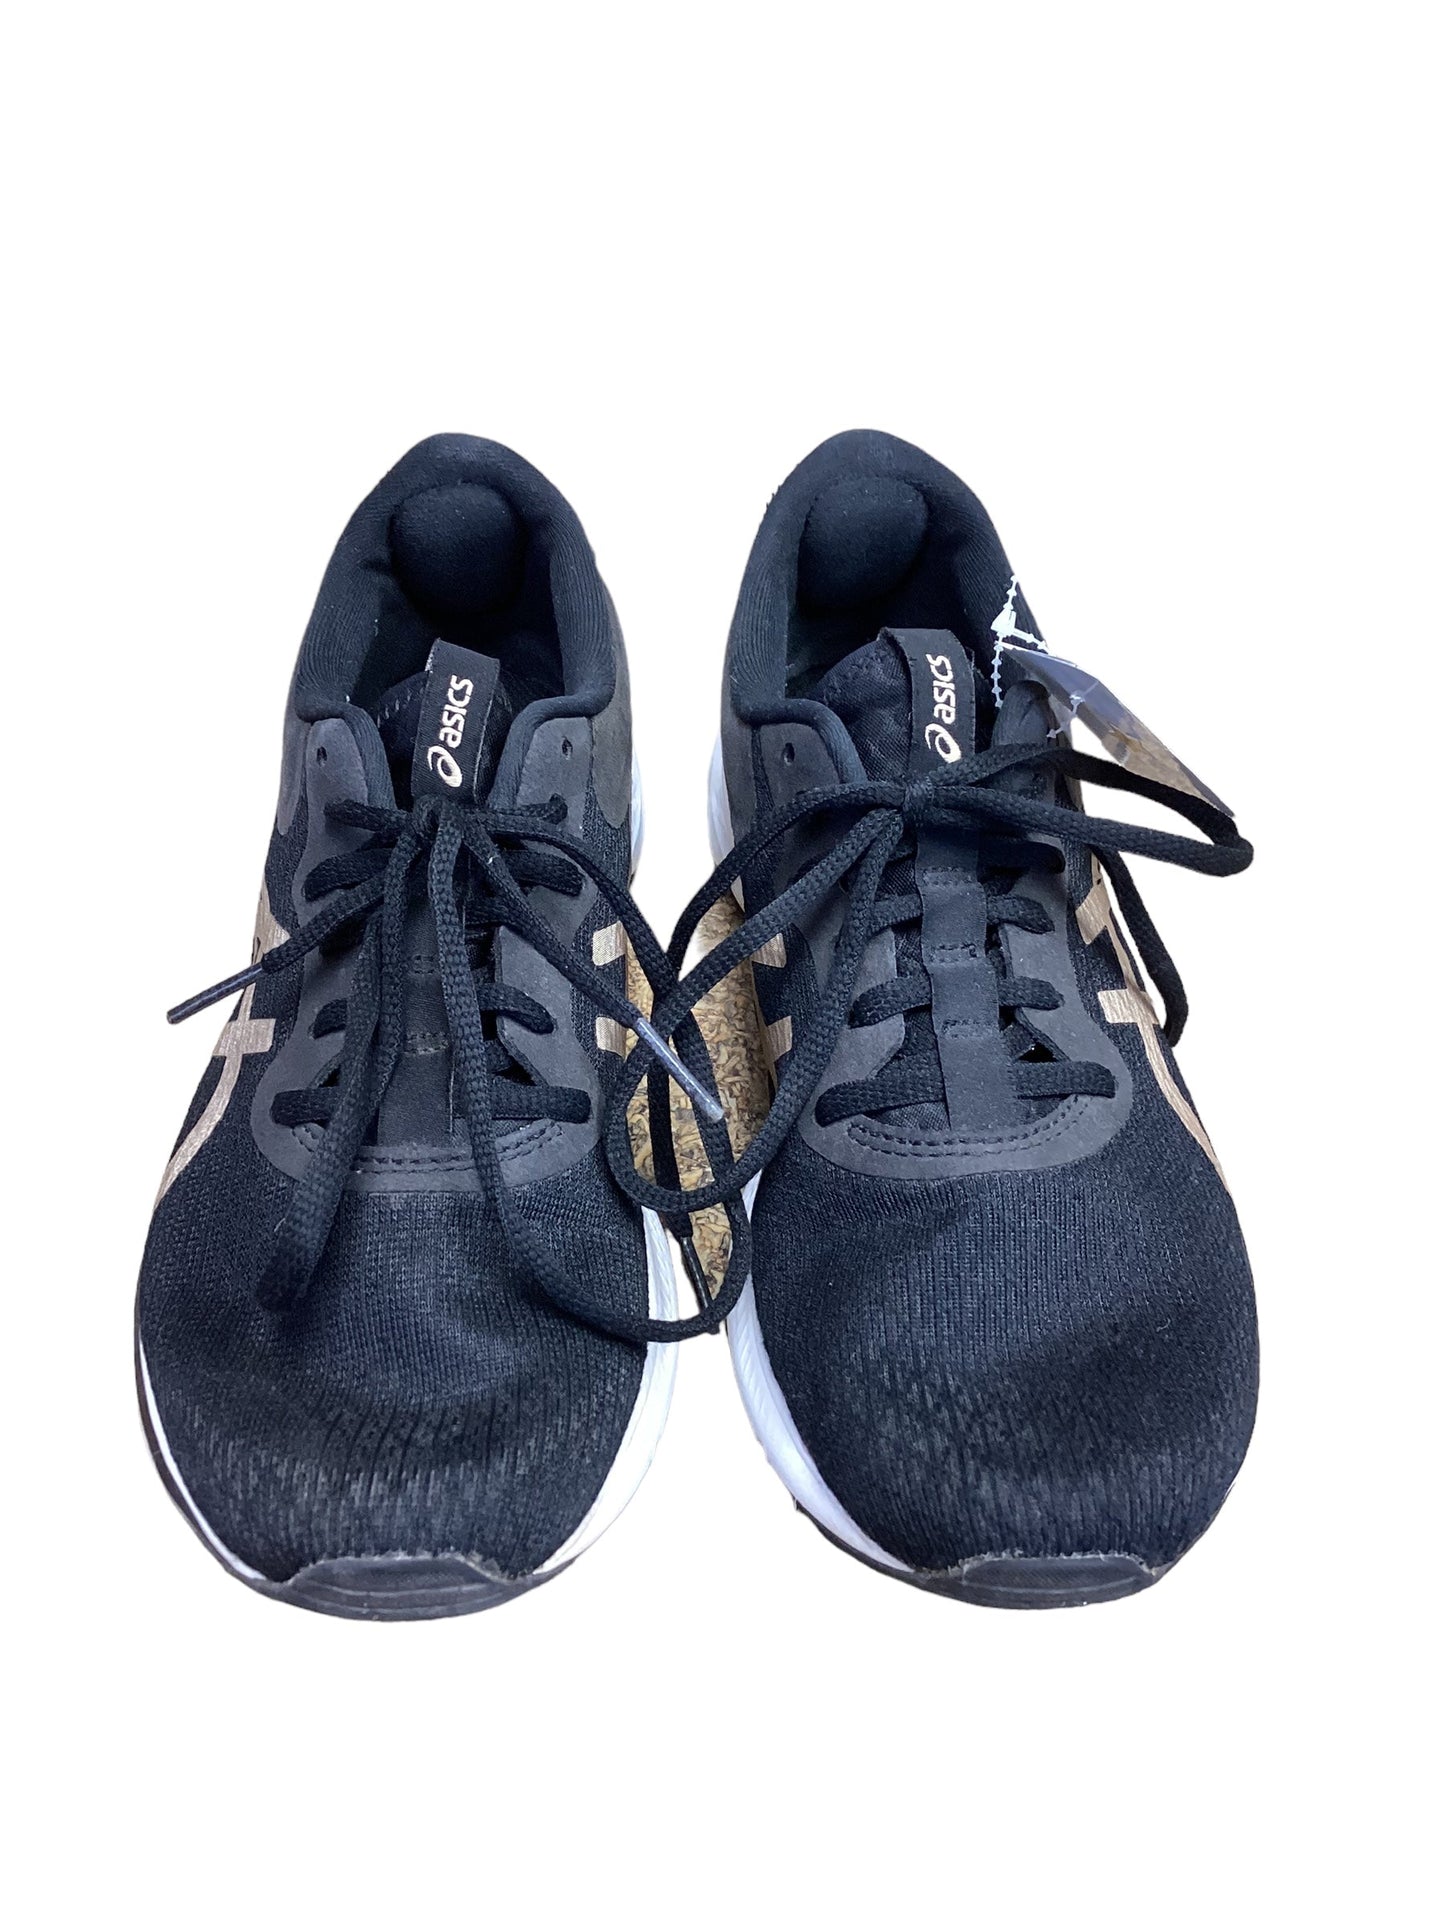 Black Shoes Athletic Asics, Size 7.5